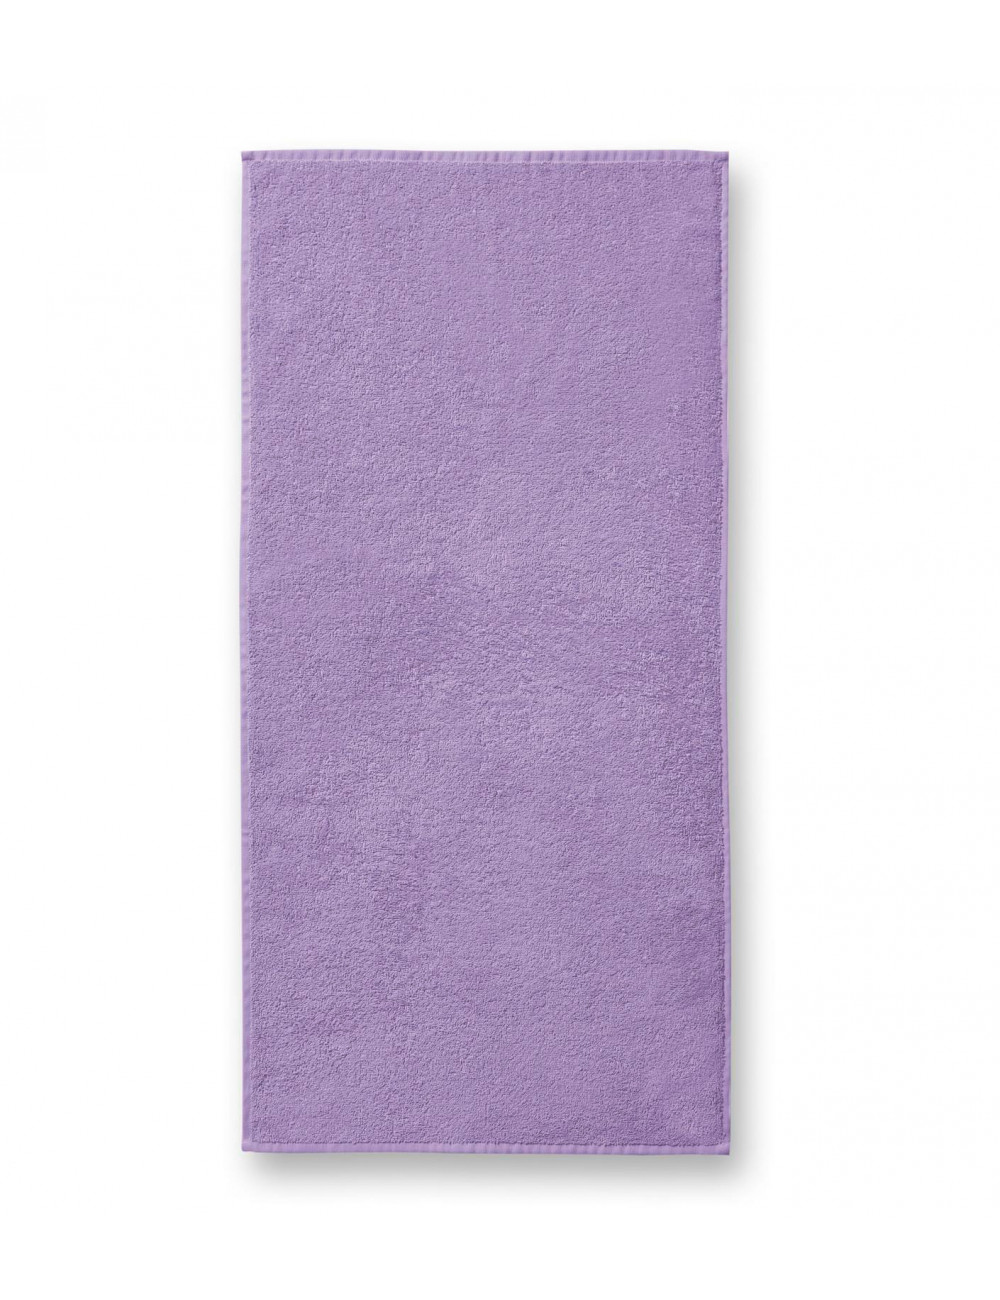 Ręcznik duży unisex terry bath towel 909 lawendowy Adler Malfini